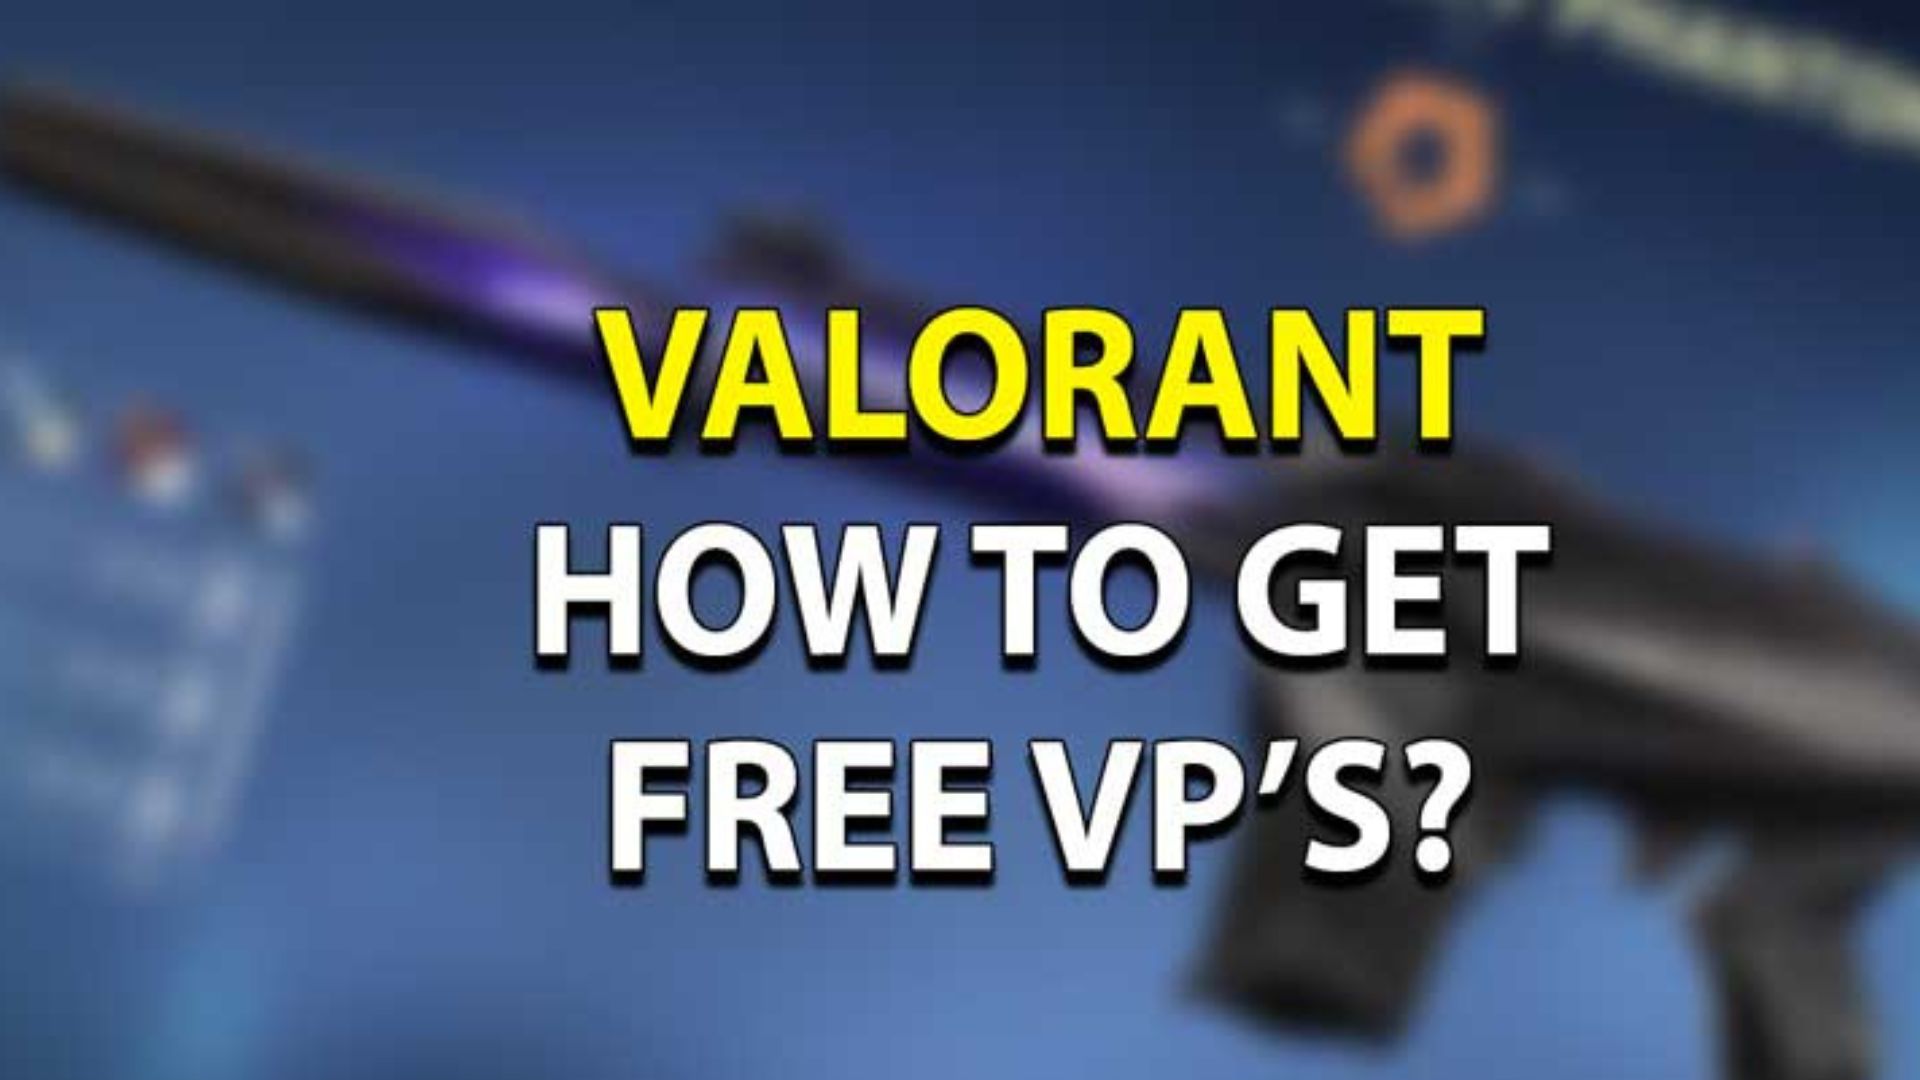 Hướng dẫn nhận VP miễn phí trong game Valorant